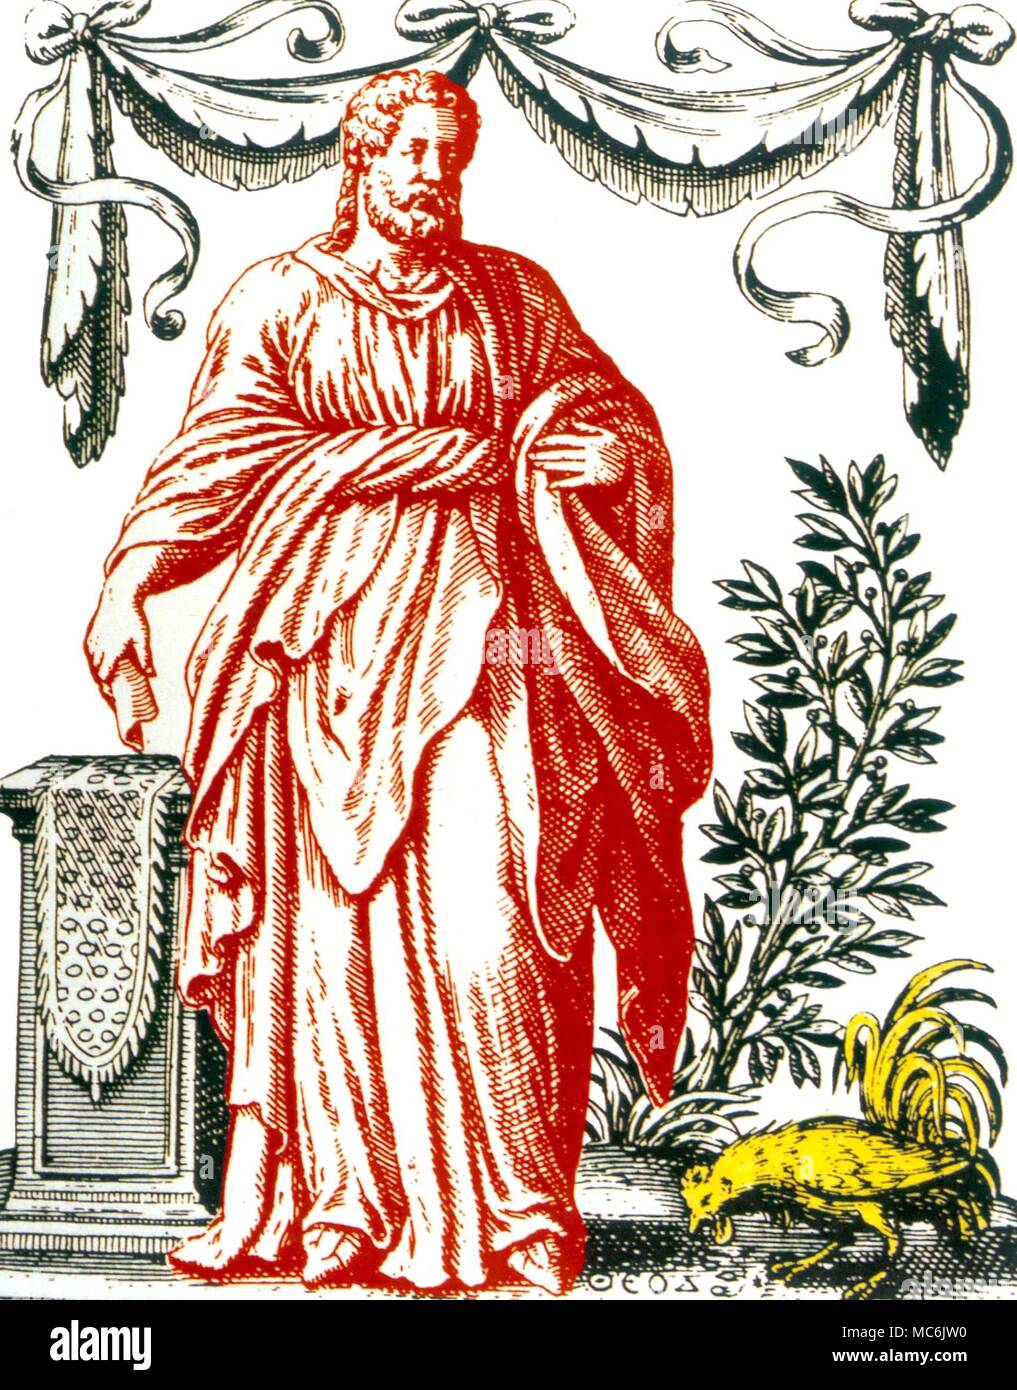 OCCULTISTS - IAMBLICHUS. Portrait of Iamblichus - artwork after Jacques Bossard's 'De Divinatione et Magicis'. Stock Photo